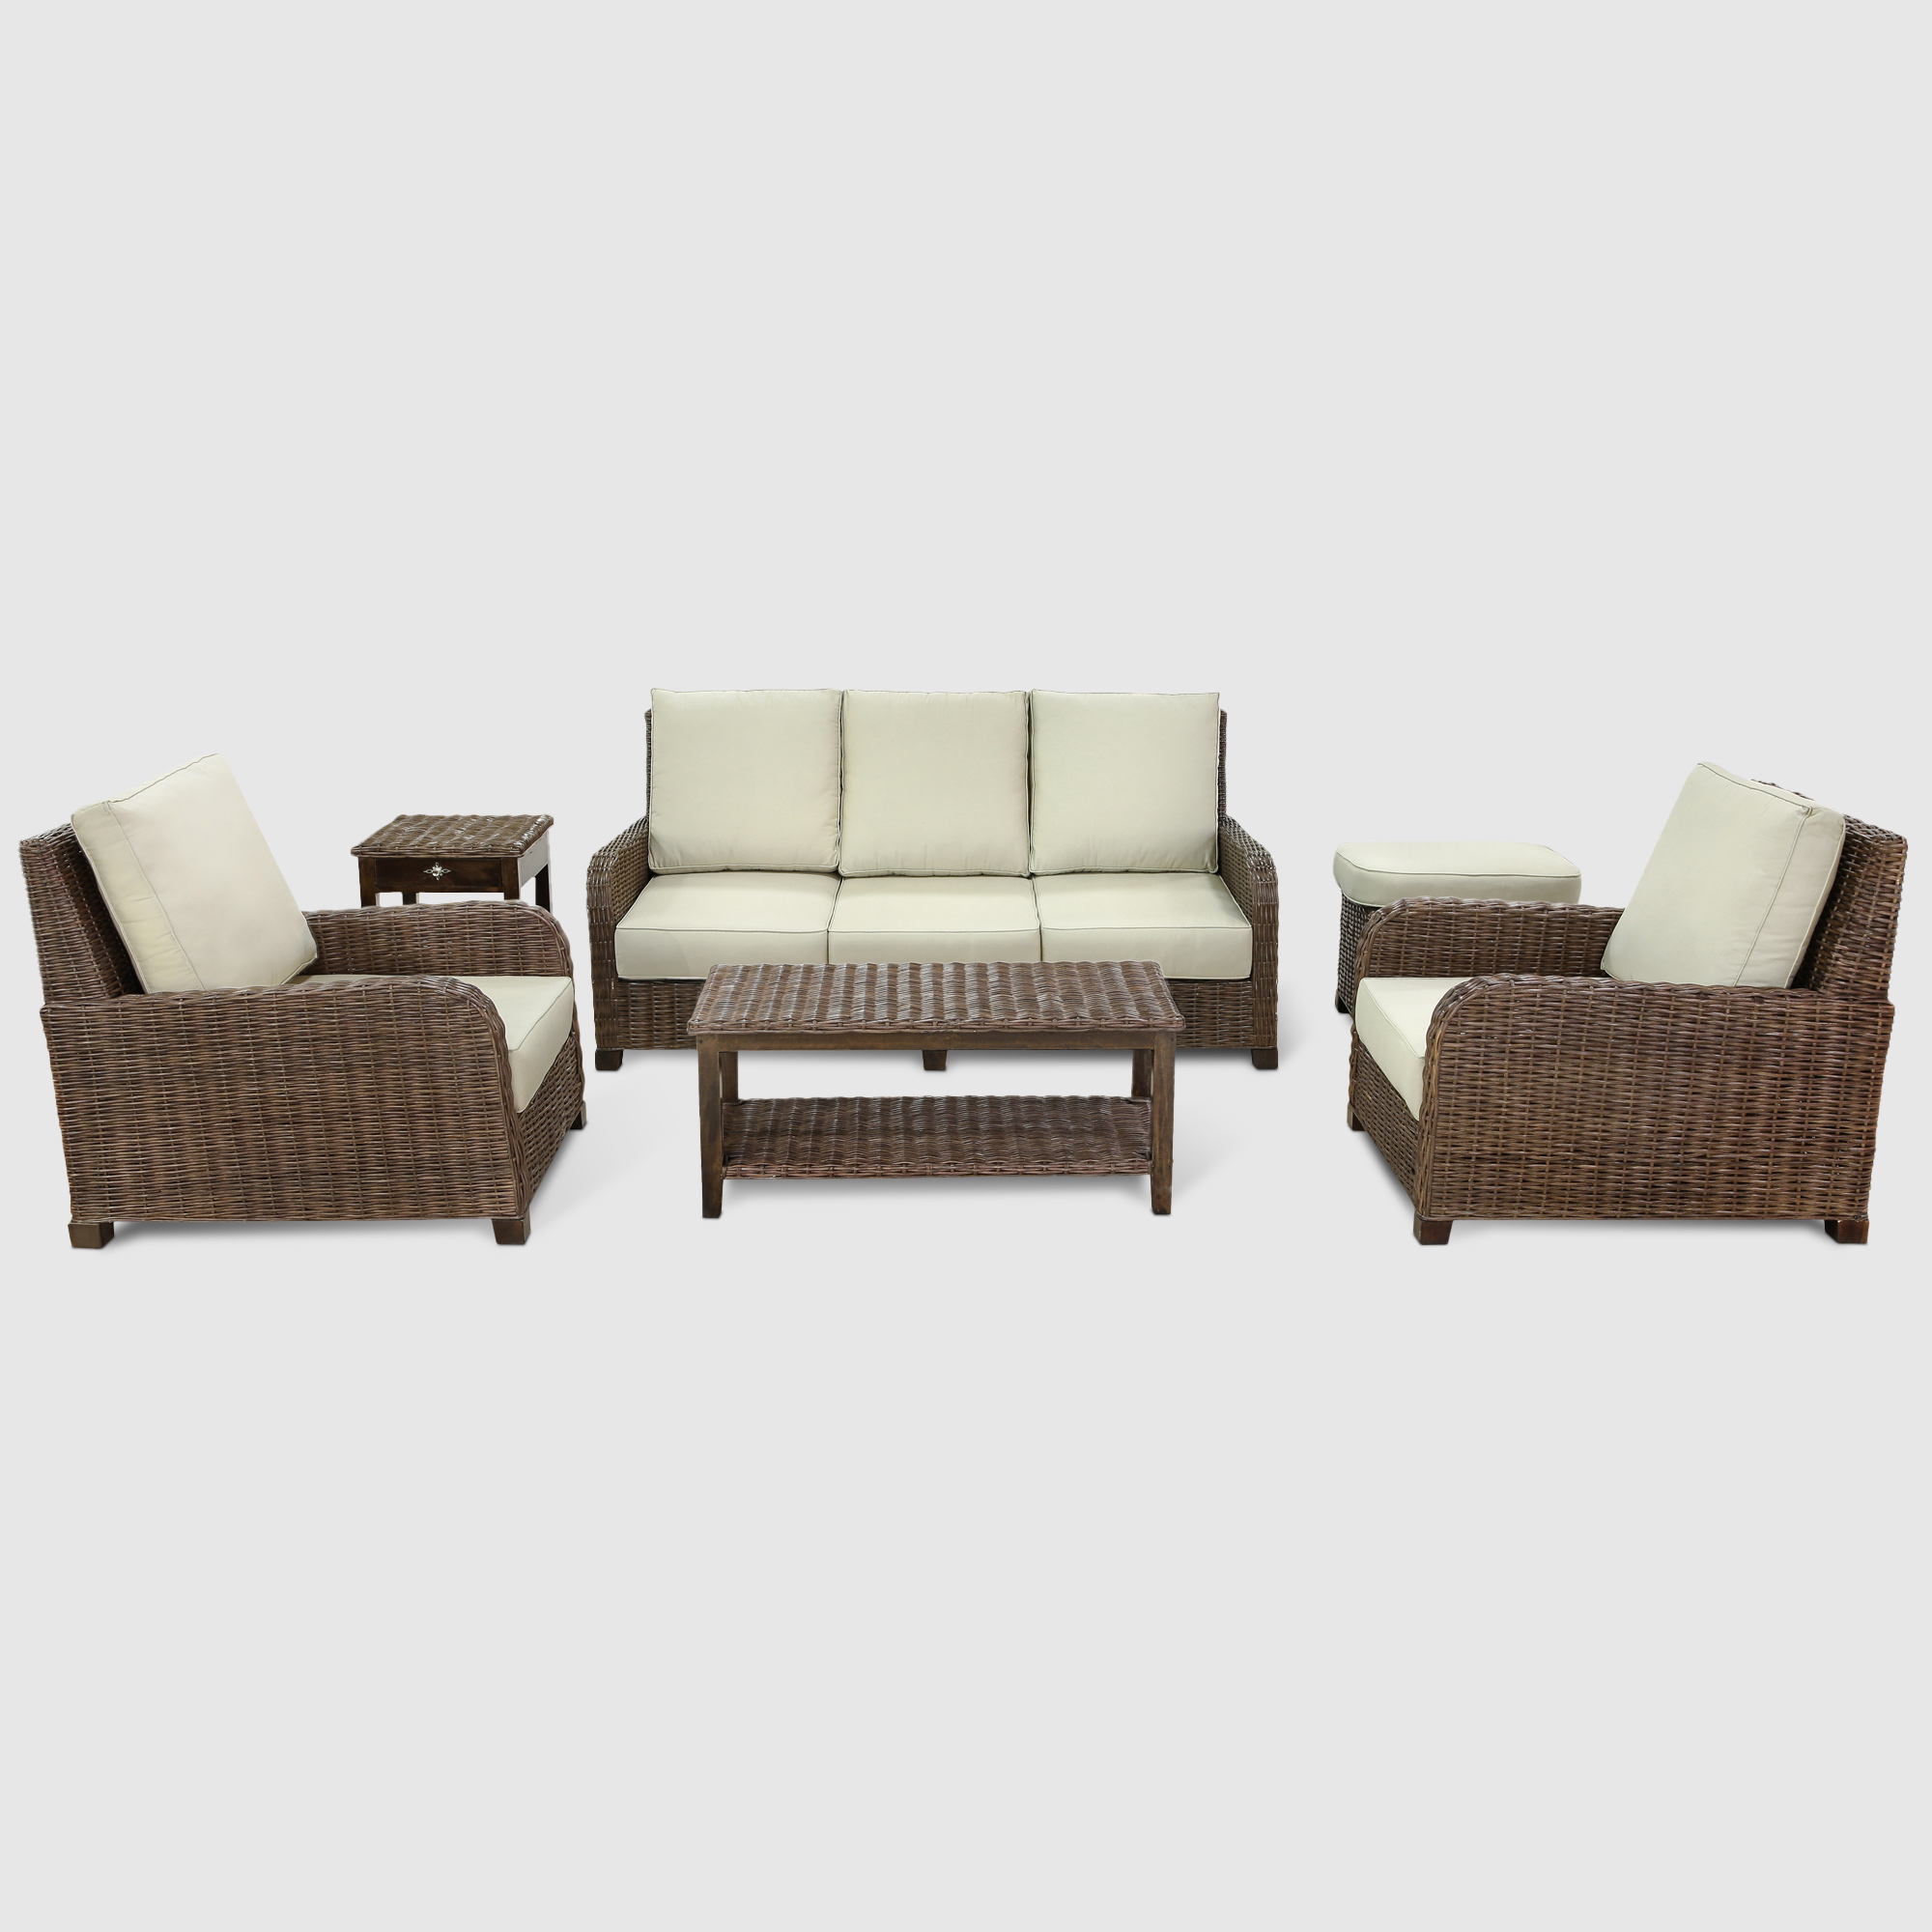 Комплект мебели Rattan grand Antibes 6 предметов, цвет коричневый - фото 1